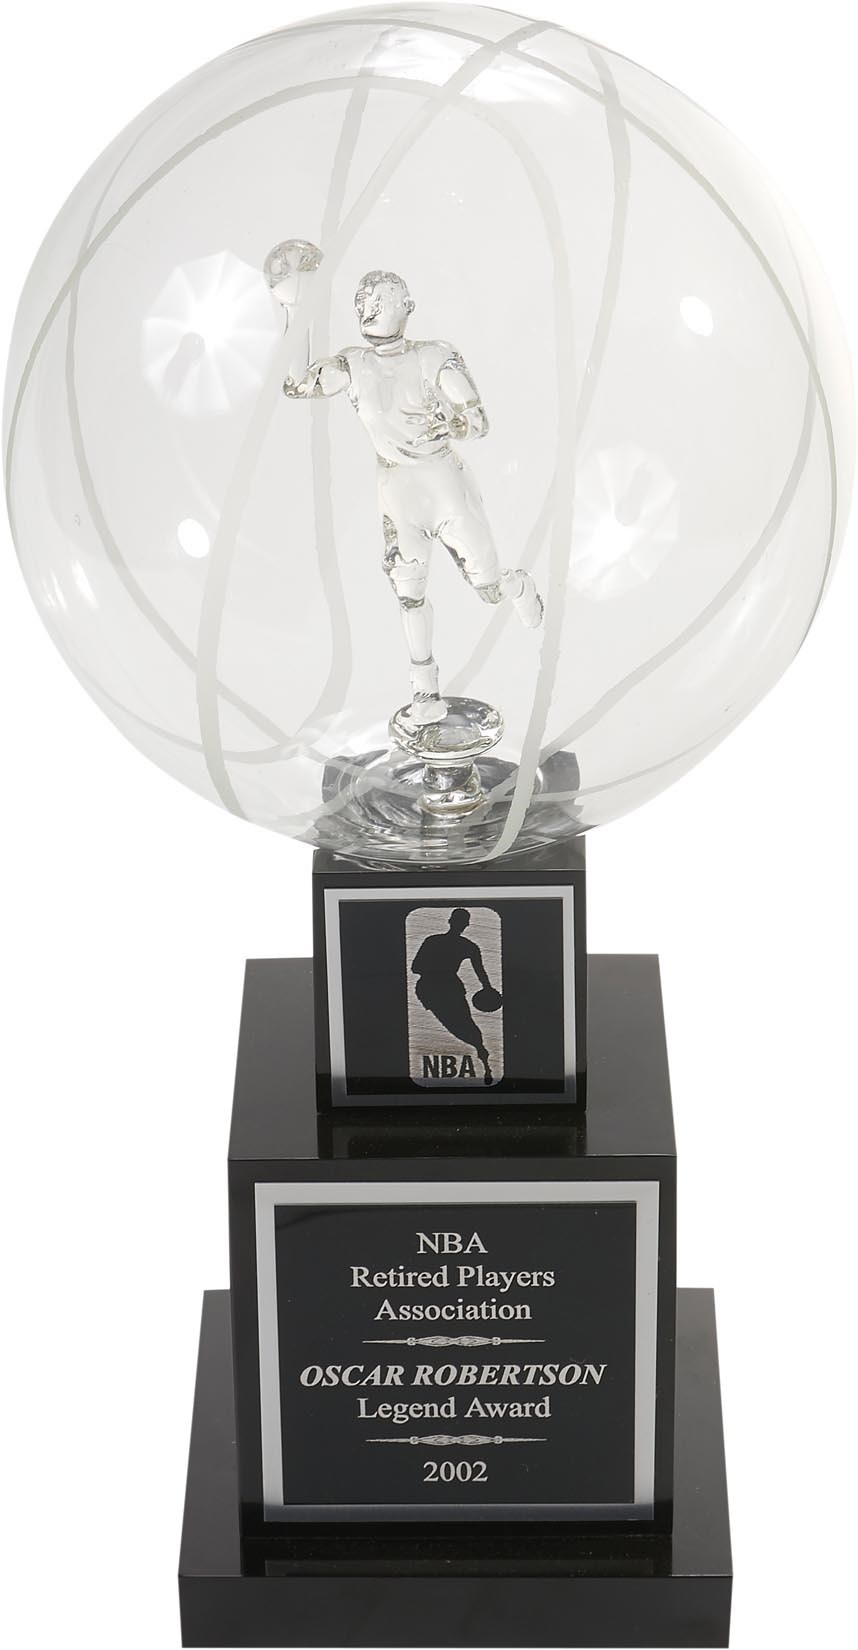 The Oscar Robertson Collection - Oscar Robertson NBA Legends Award